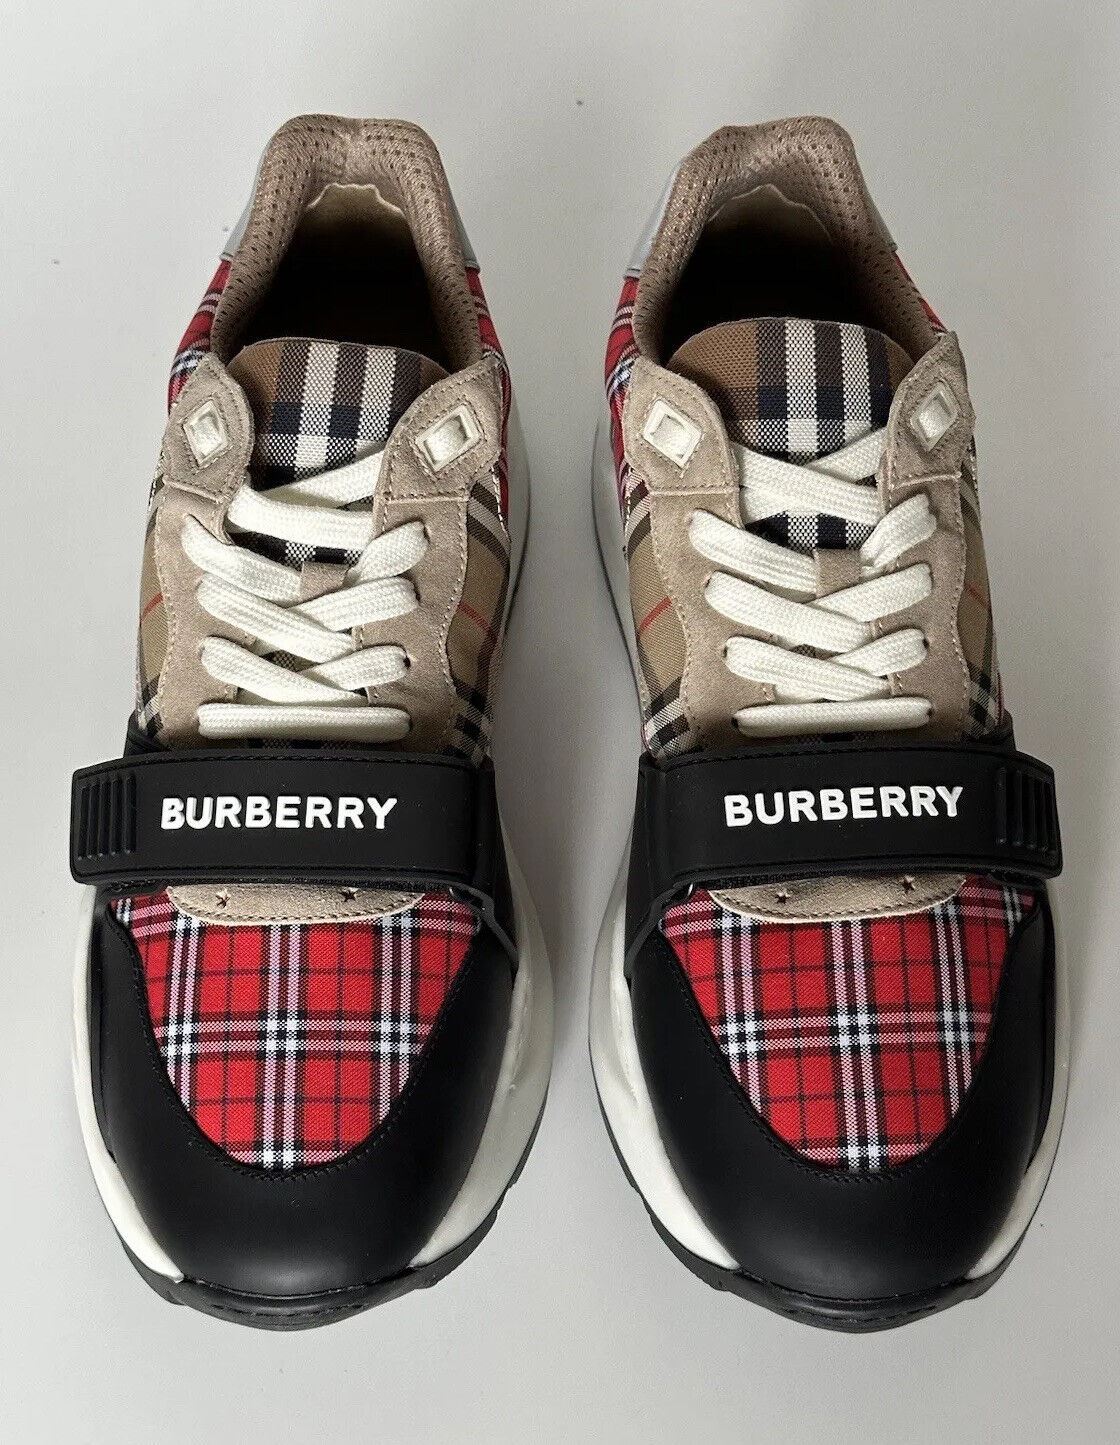 Мужские разноцветные кроссовки Ramsey Burberry 790 долларов США 11 США (44 евро) 8048632 Италия 